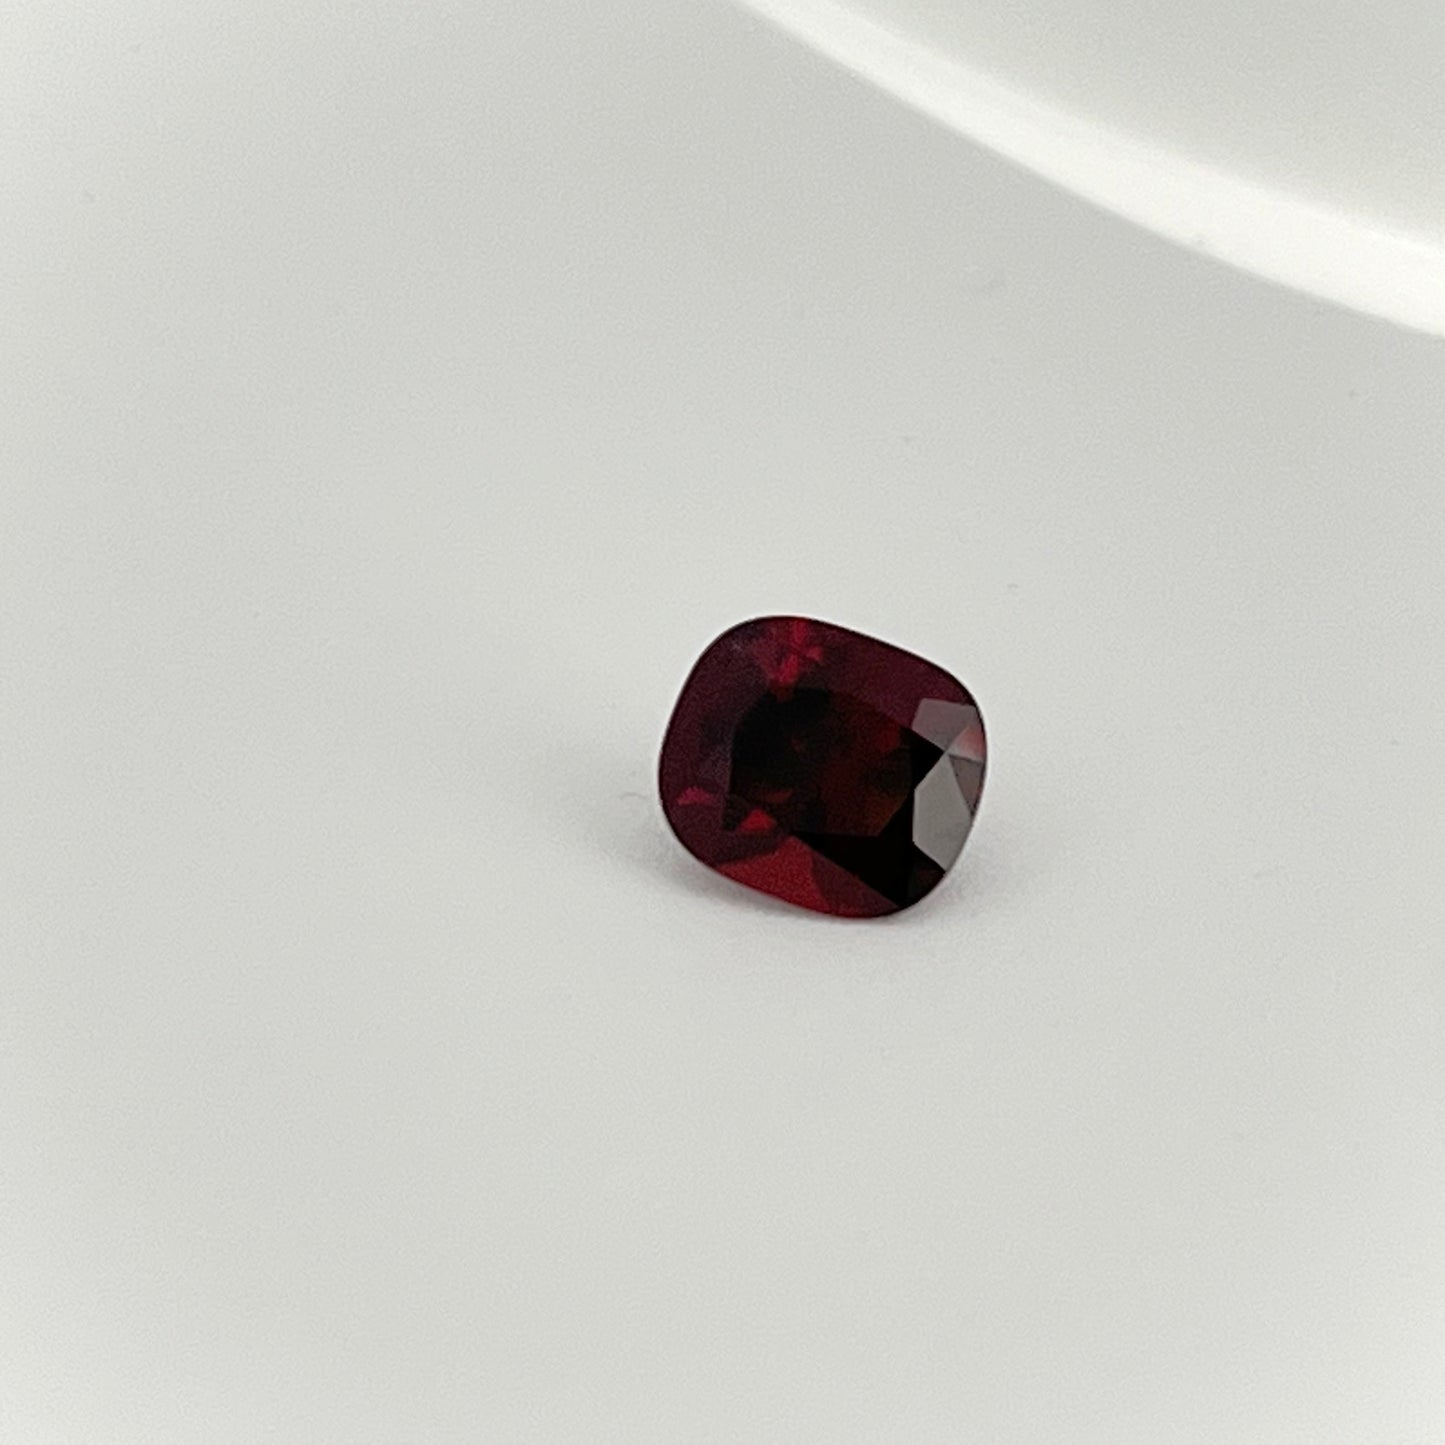 1.74ct Red Garnet / Emerald cut